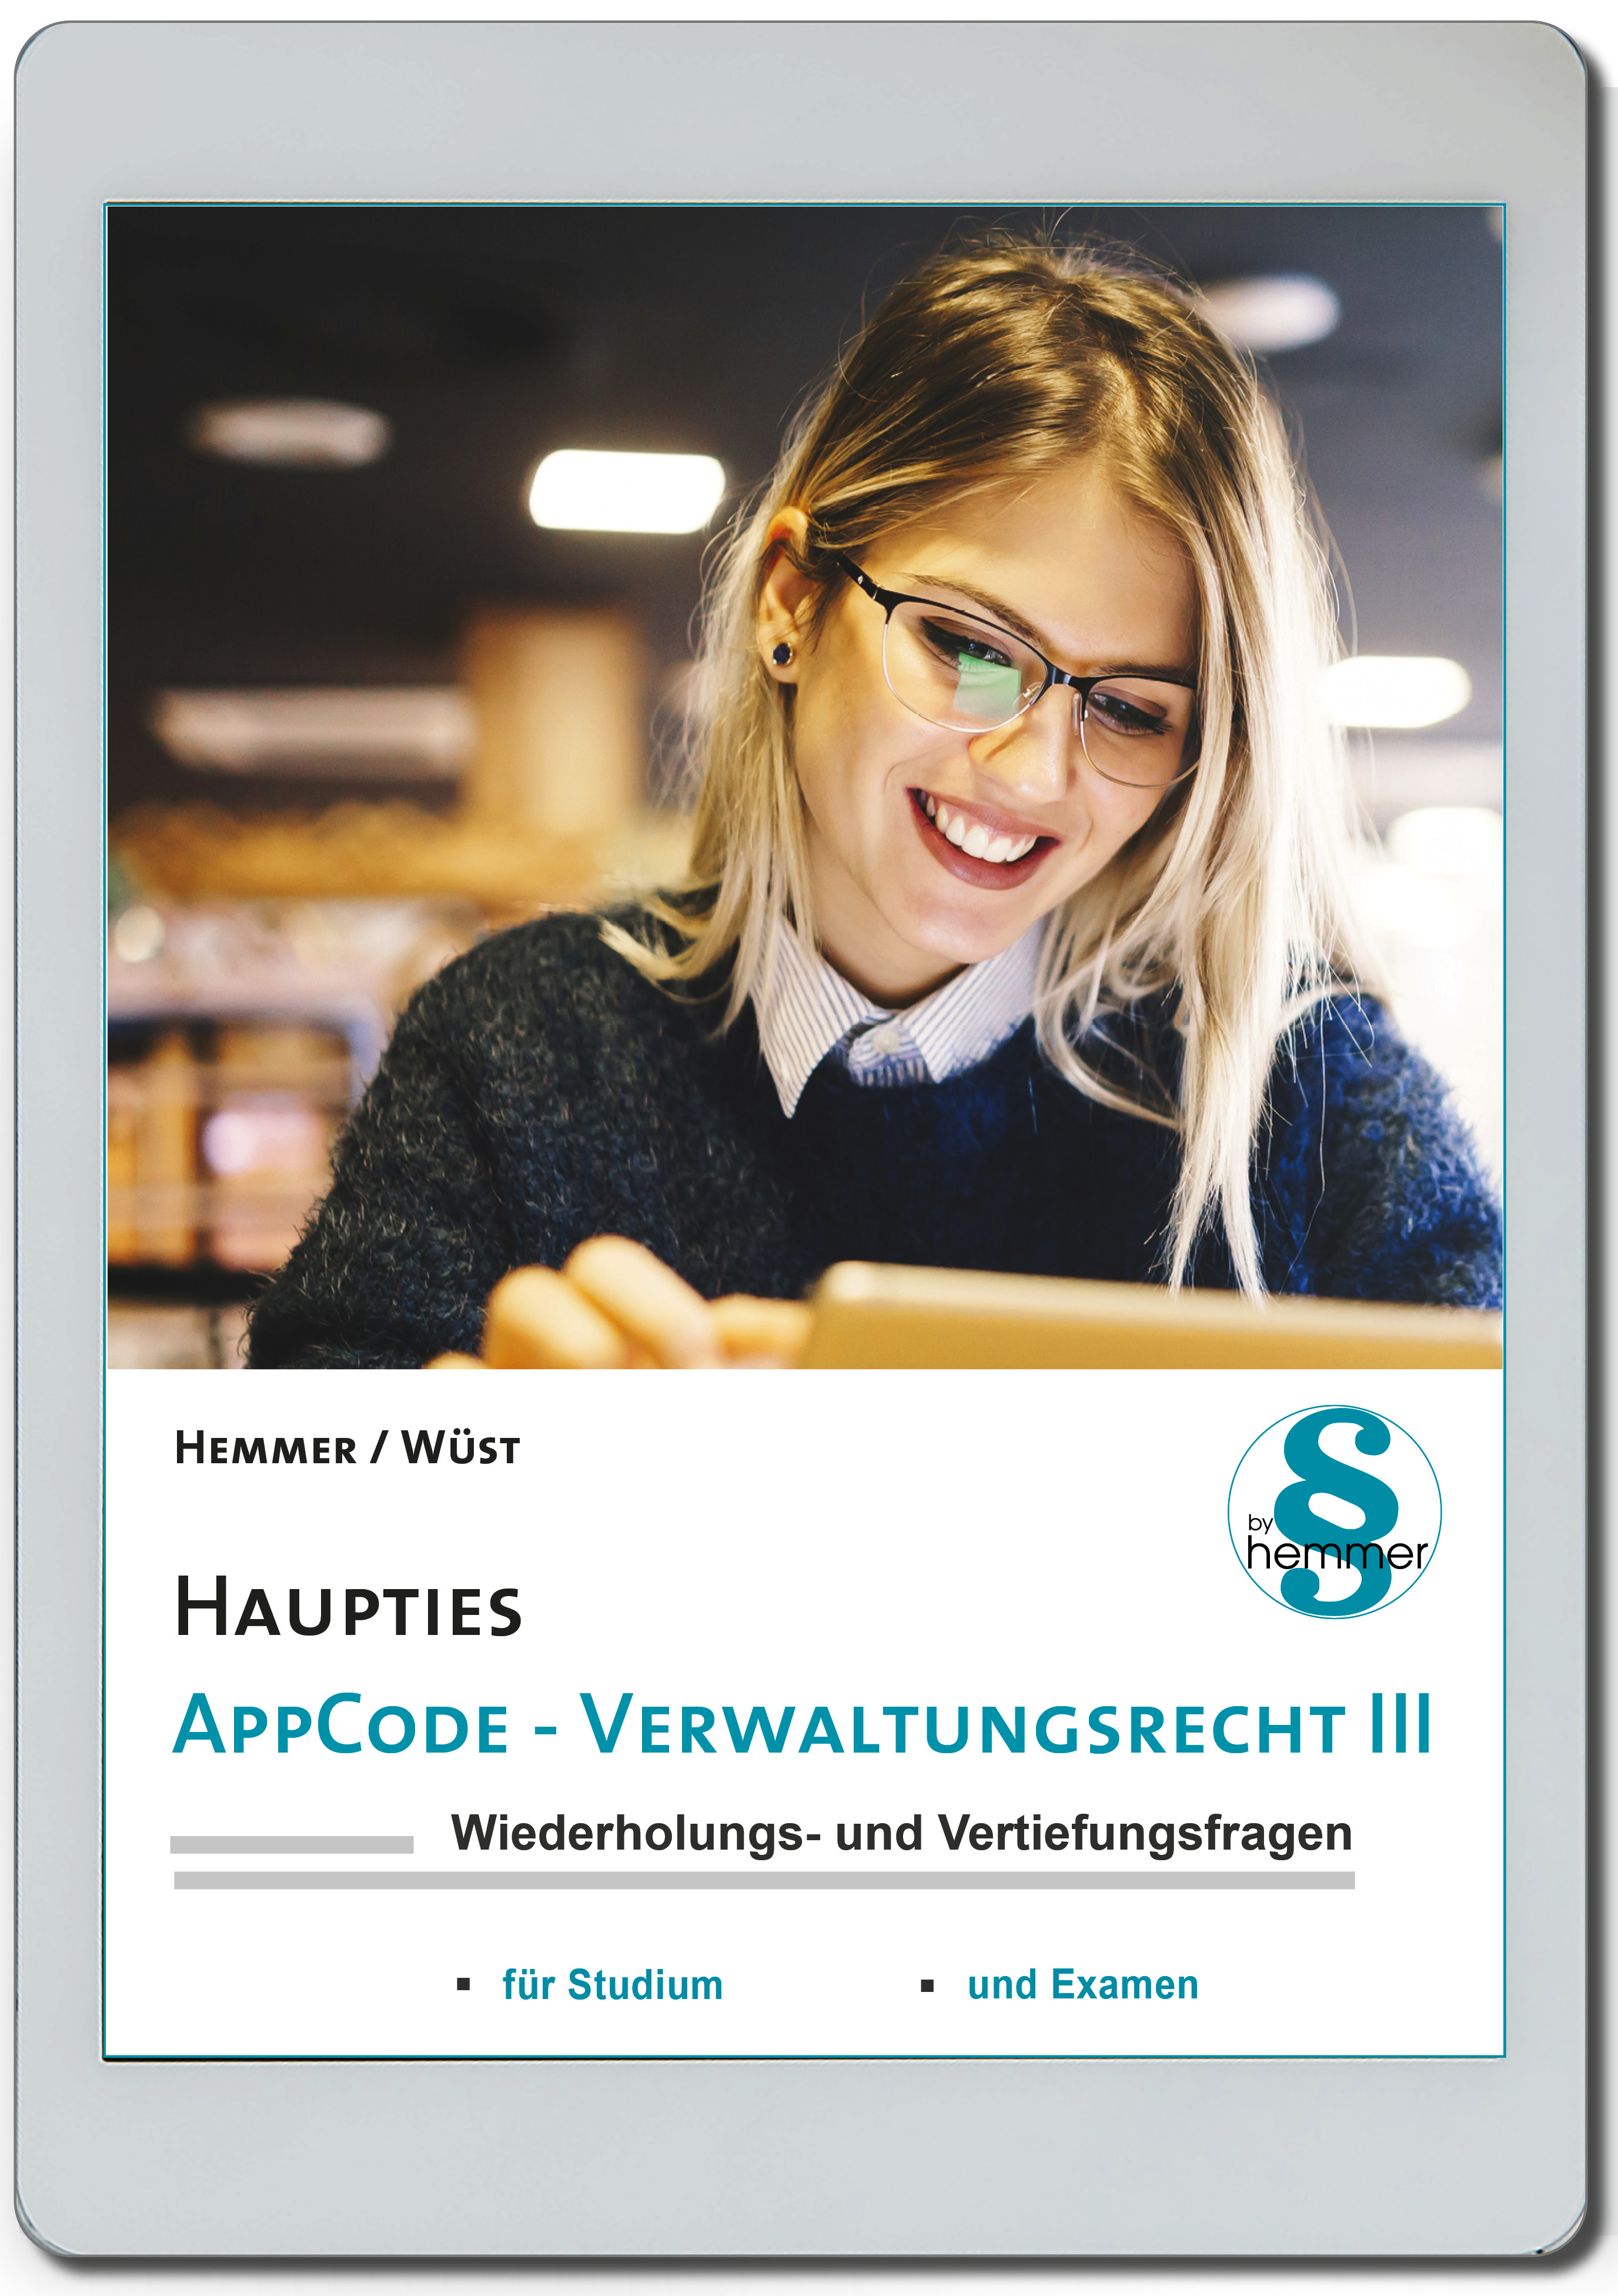 AppCode - haupties - Verwaltungsrecht III